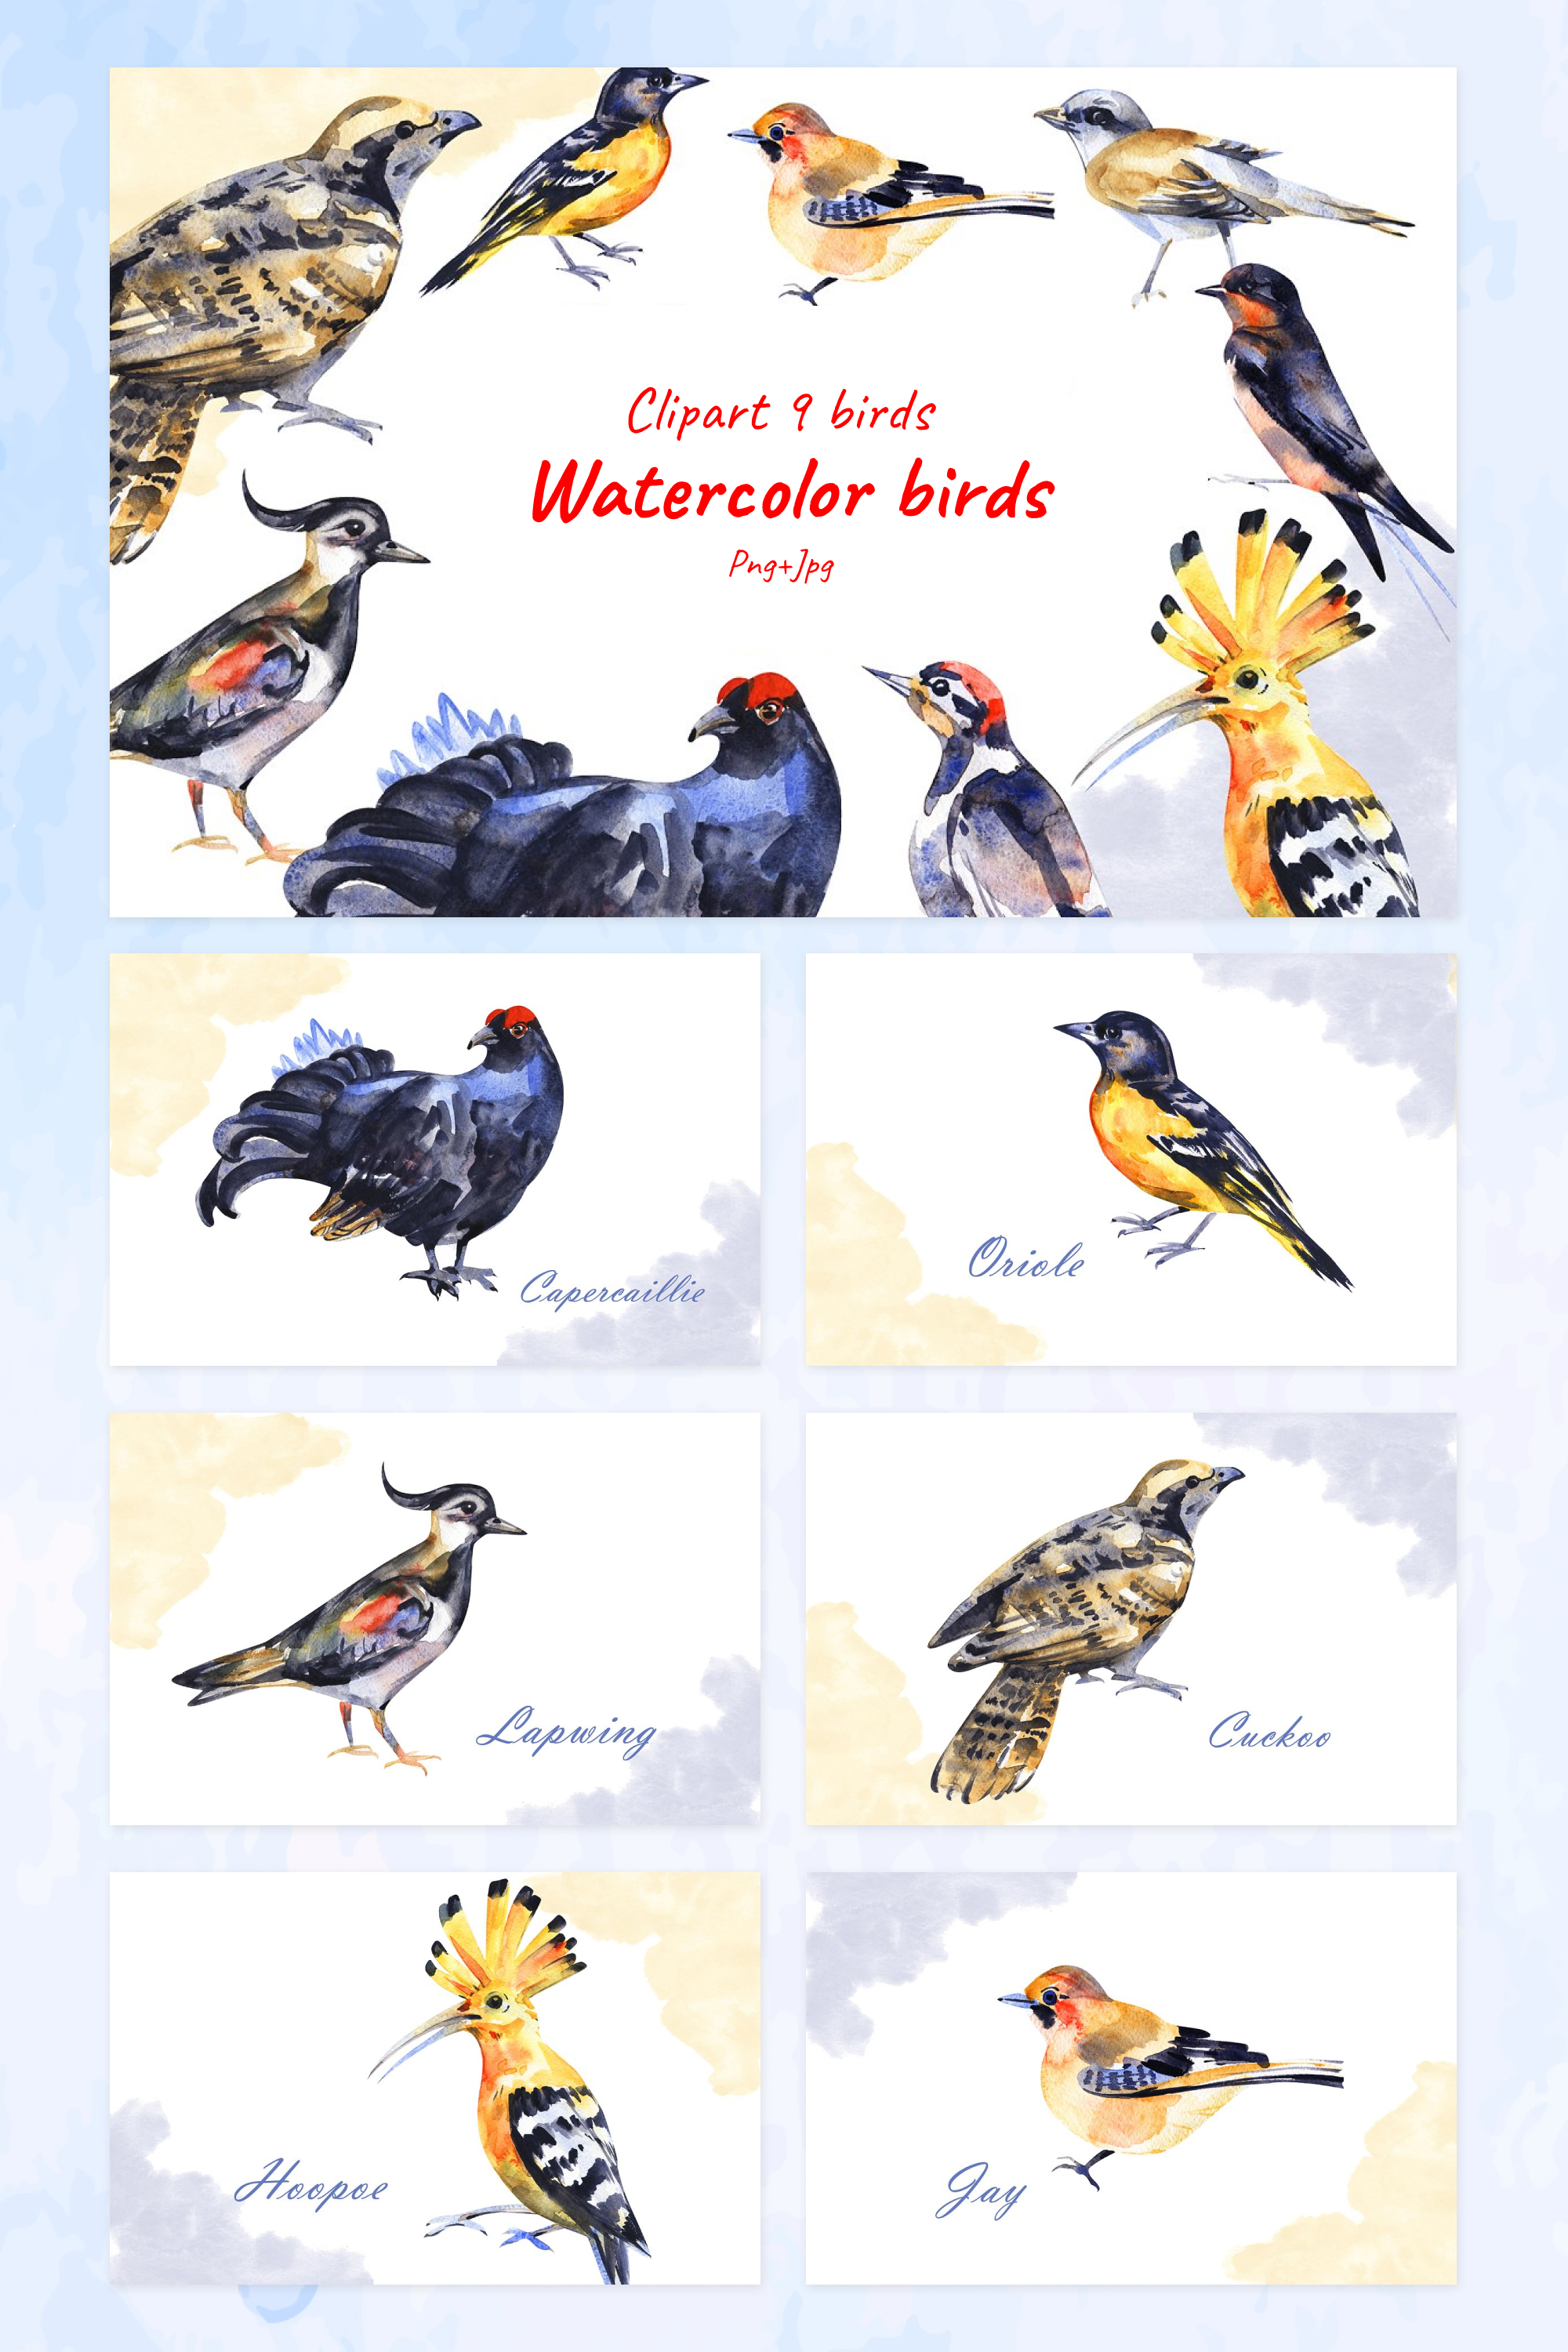 Watercolor birds of pinterest